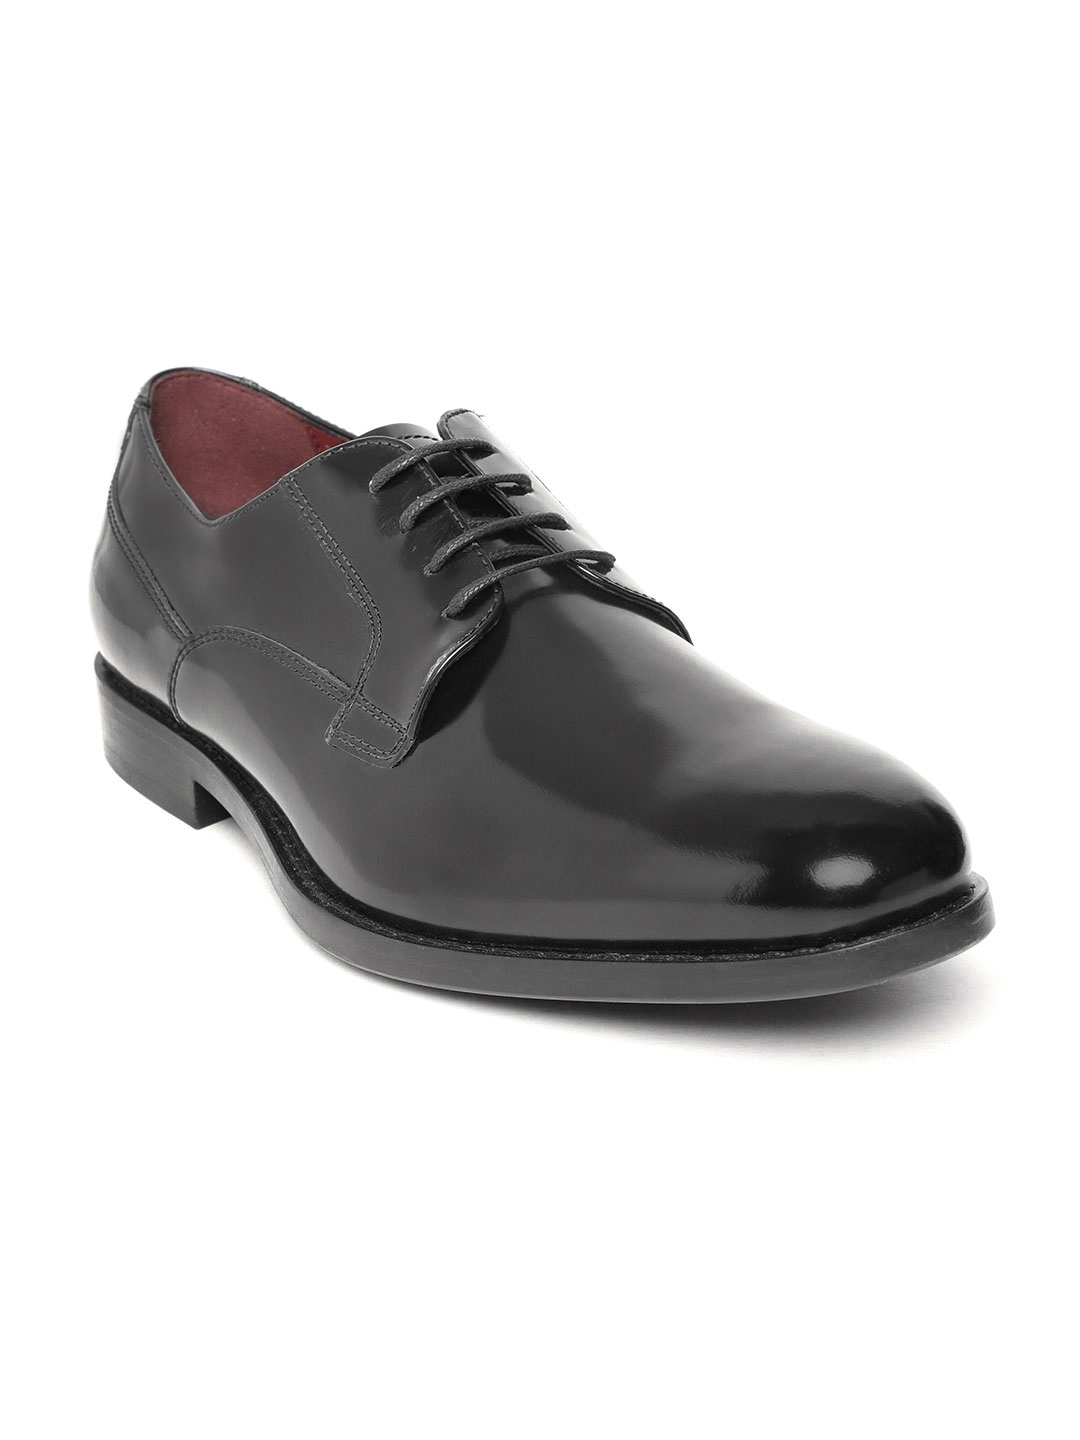 Buy Geox Men Black Leather Formal Derbys - Formal Shoes for Men ...